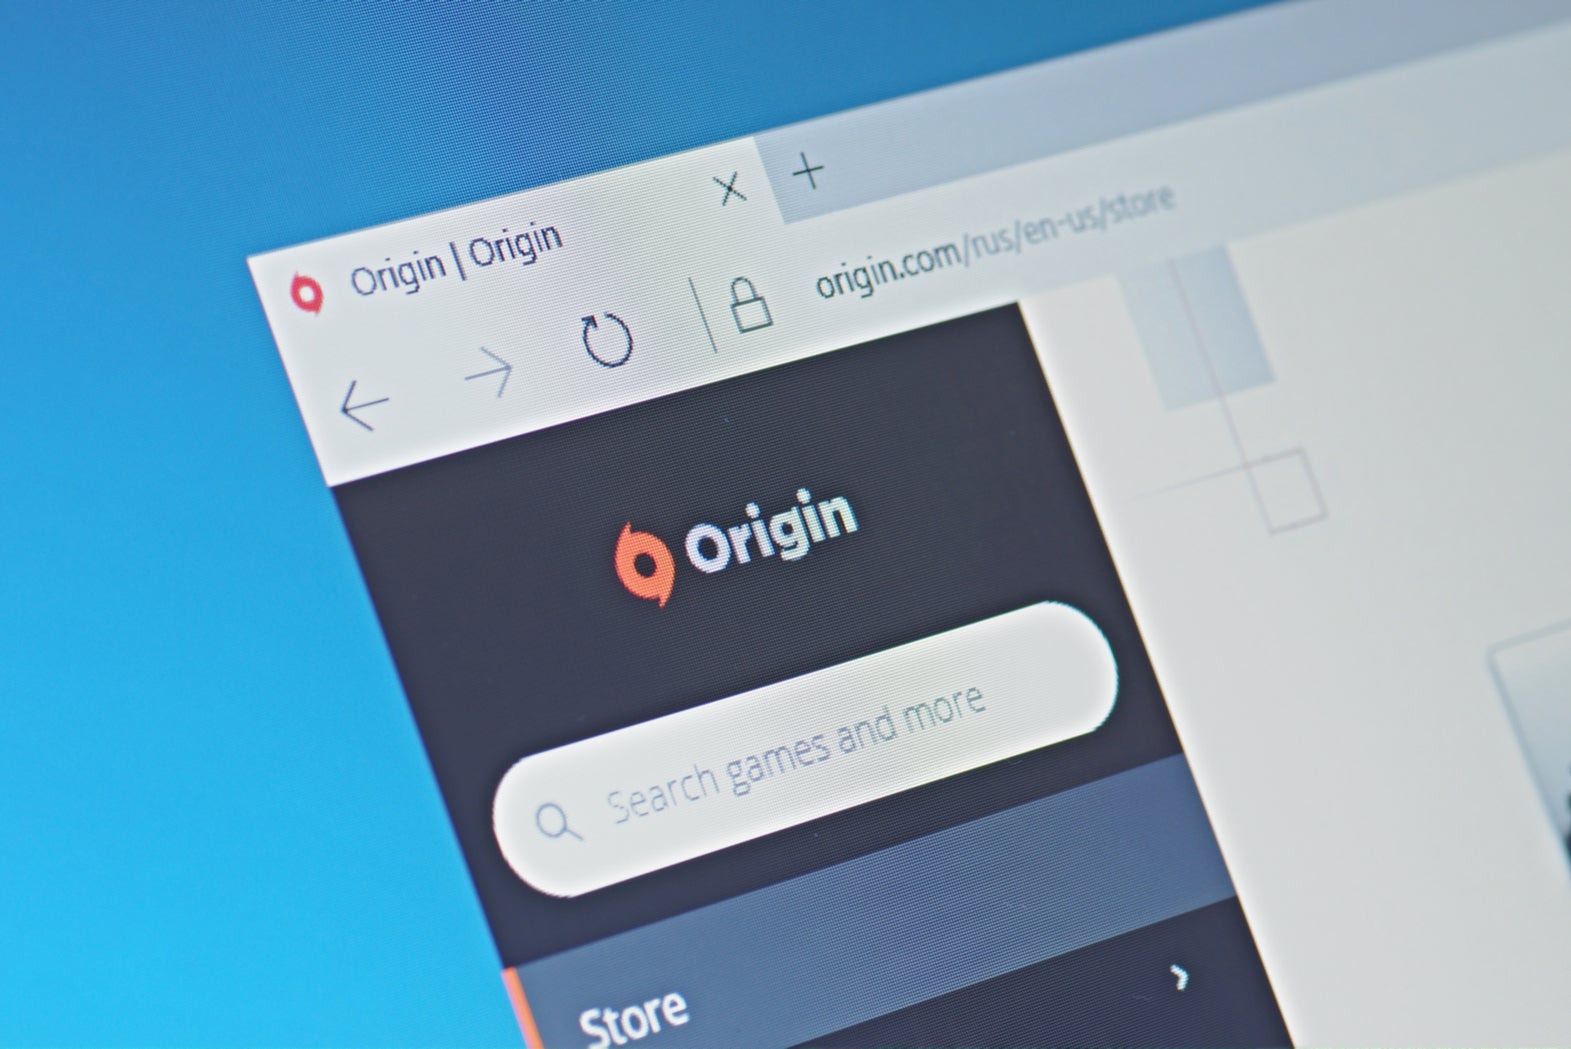 Origin critical update - Verdict